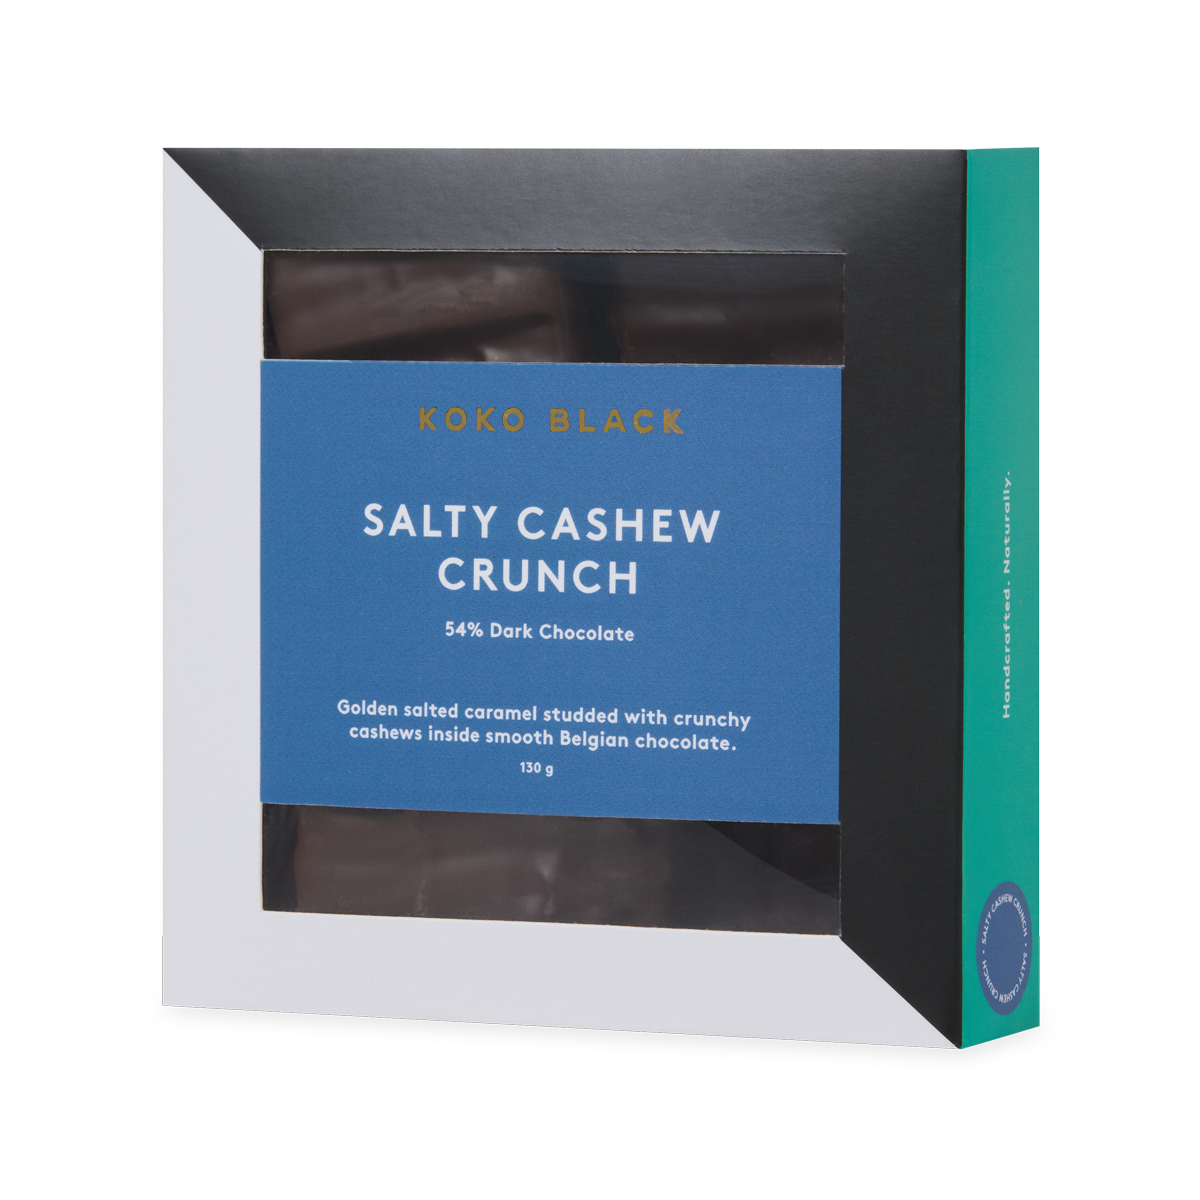 Salty Cashew Crunch 130g | Dark Chocolate